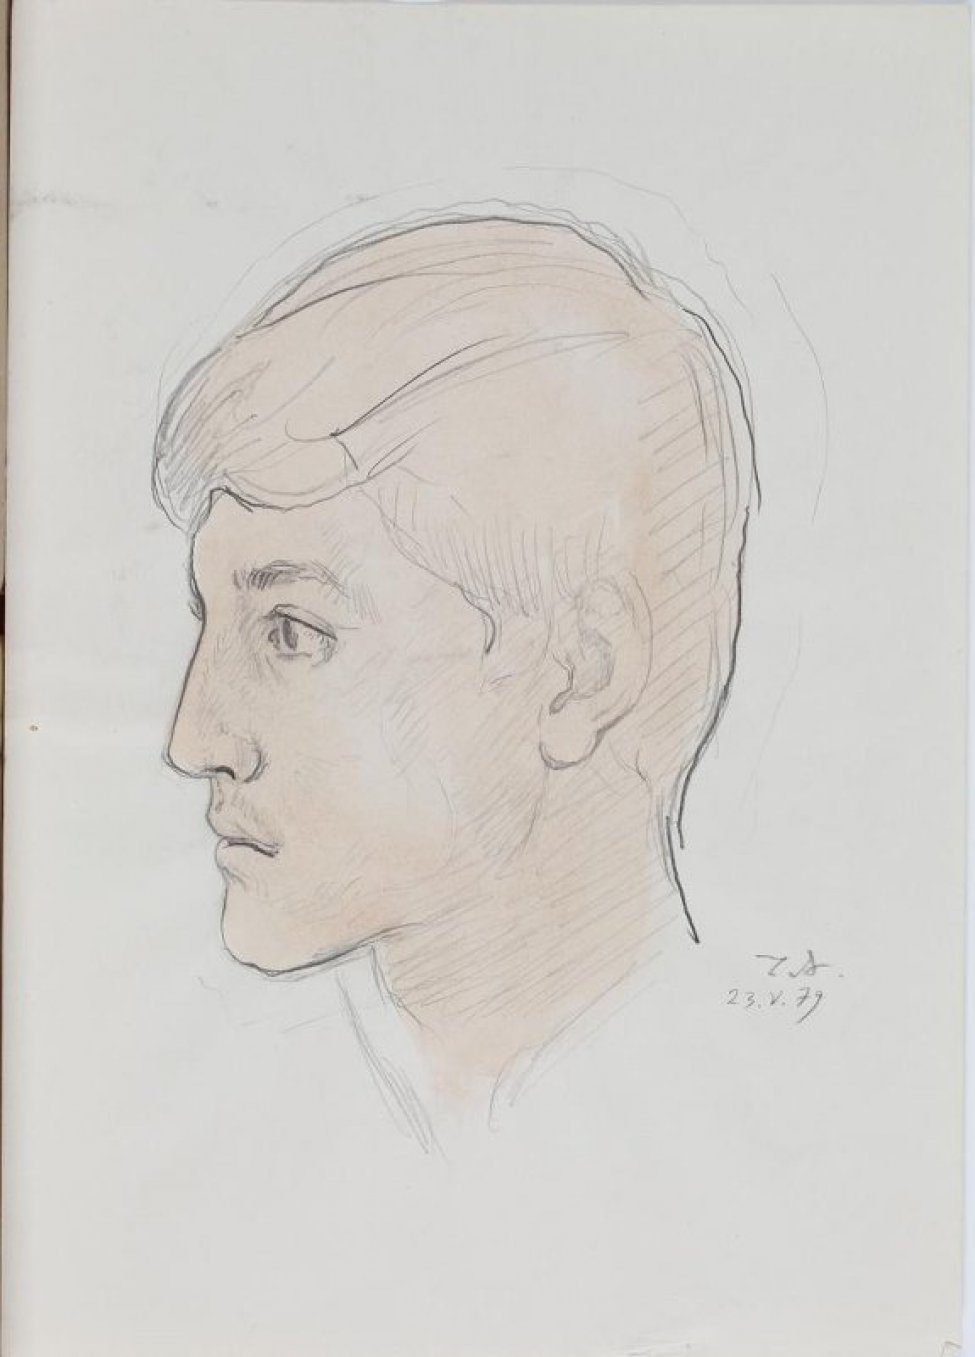 Изображена в левый профиль голова молодого мужчины, с волосами волной, закрывающими лоб.